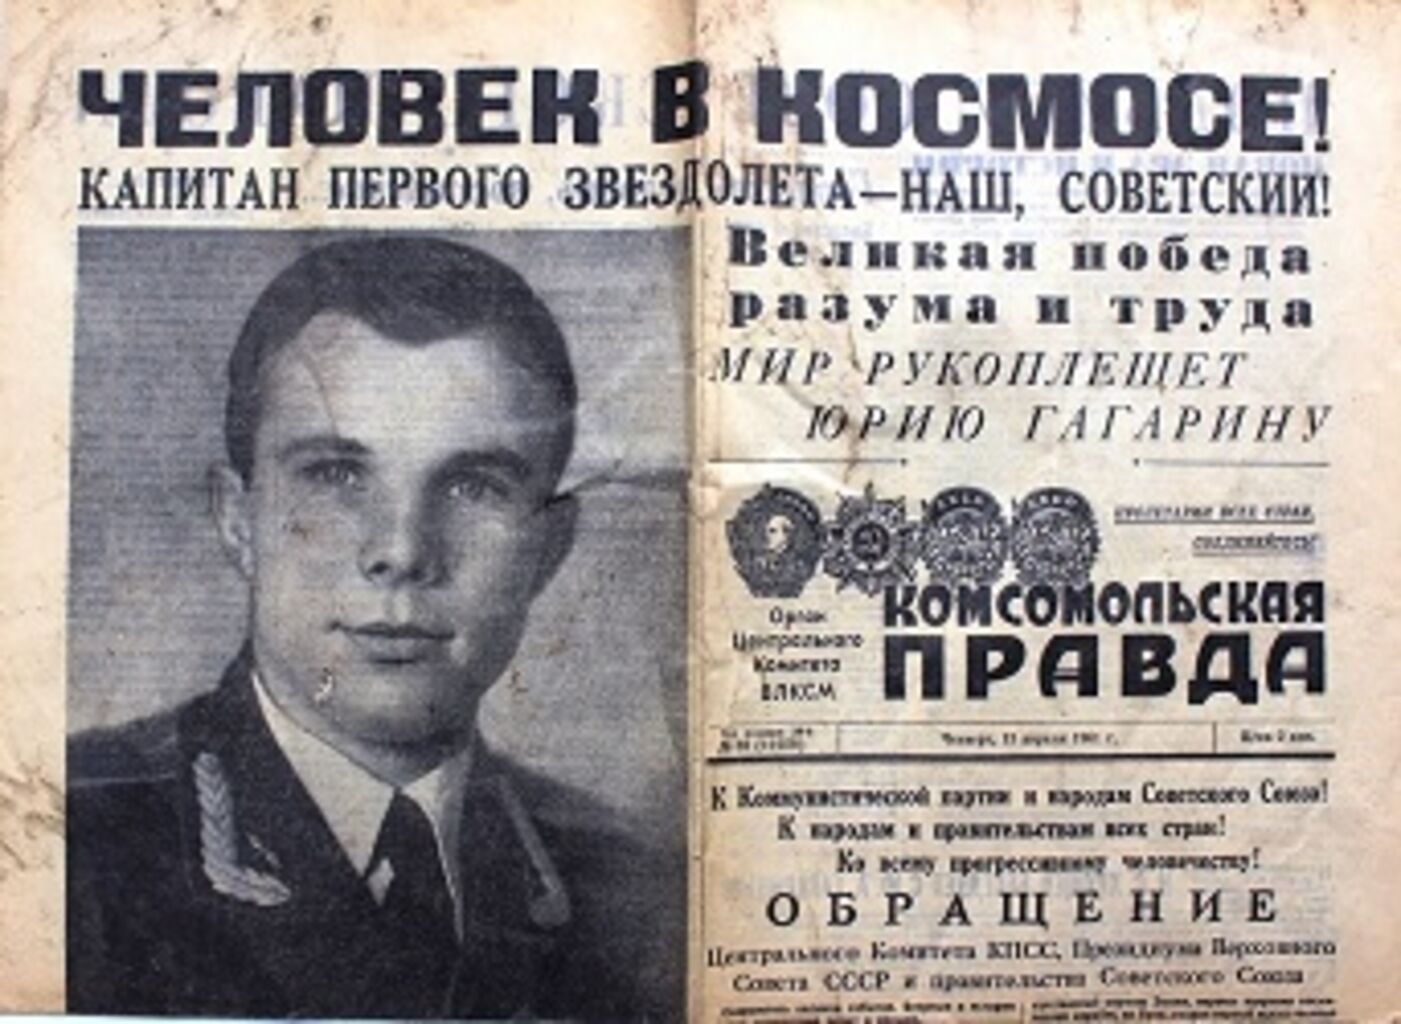 Сообщение о первом полете в космос. Гагарин 12 апреля 1961. 12 Апреля 1961 года первый полет человека в космос. 12 Апреля 1961 года полет Гагарина.